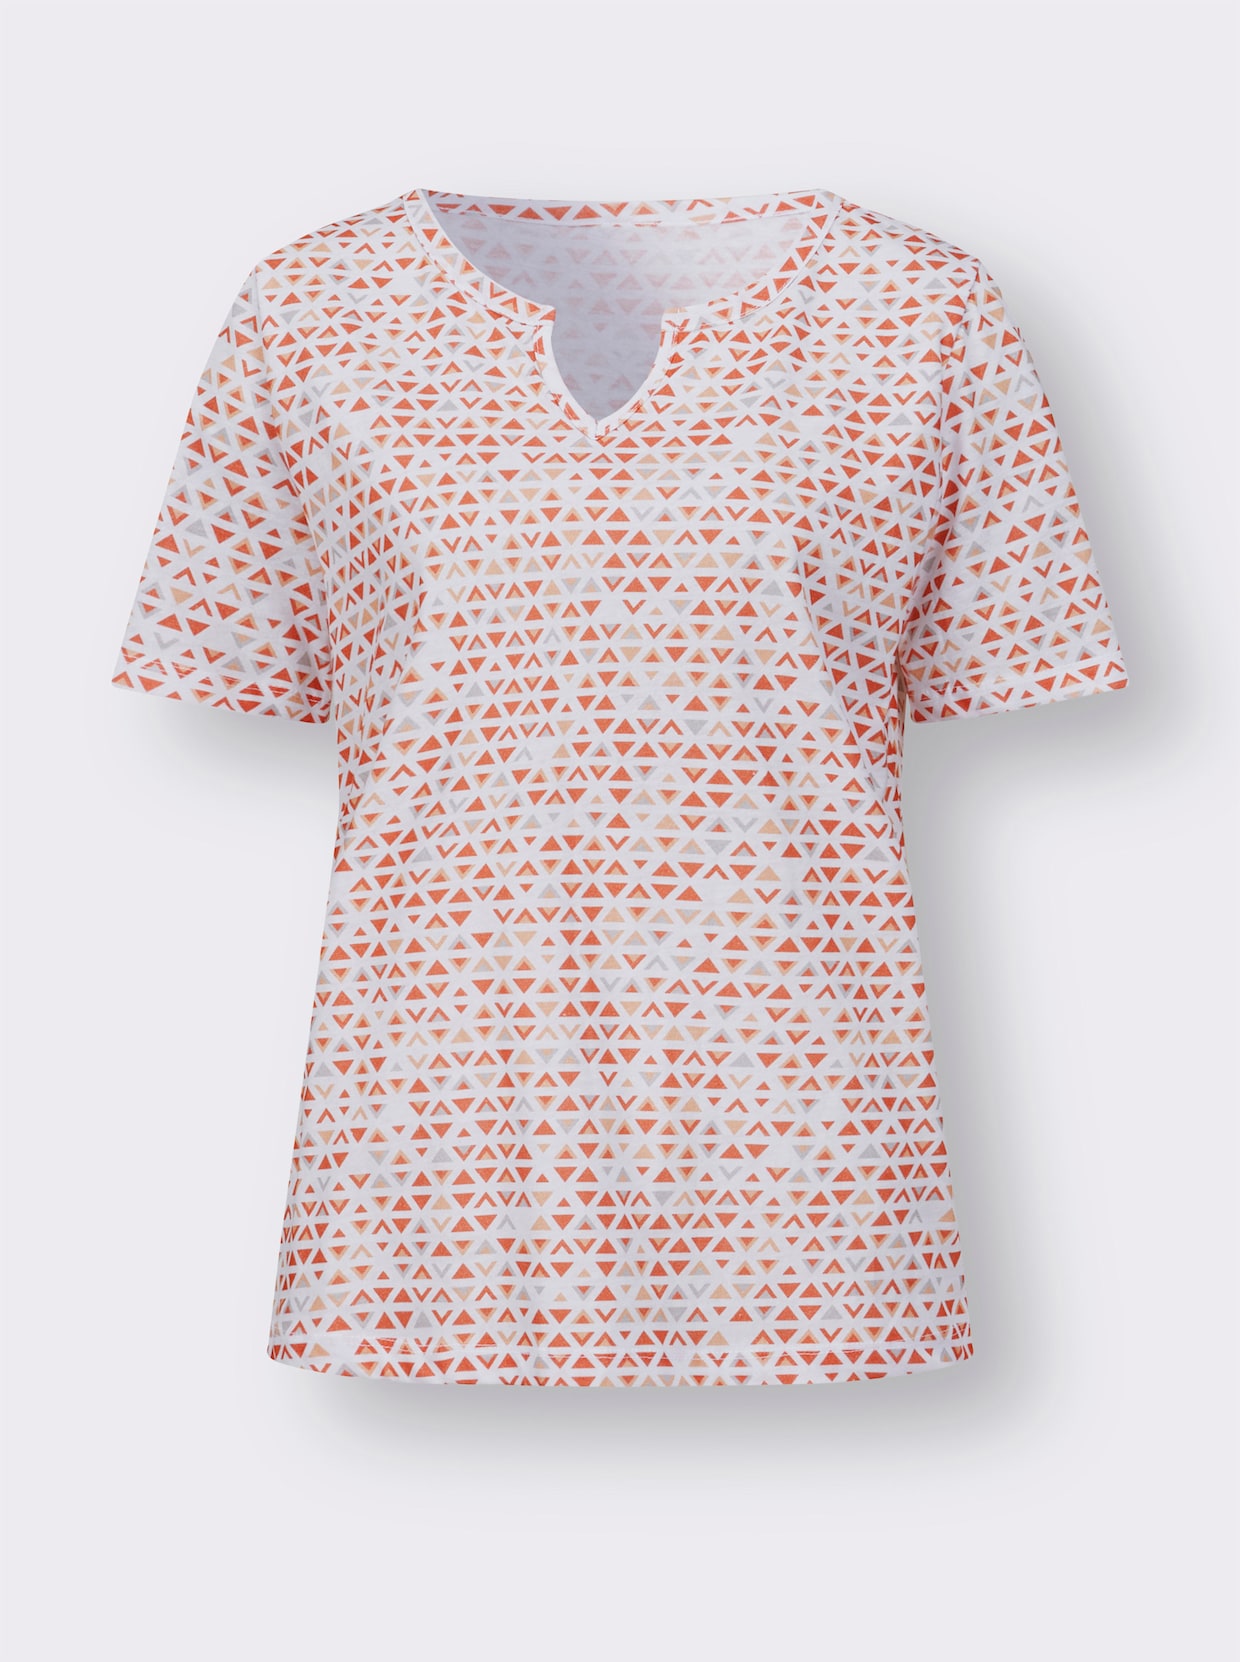 Tričko s krátkymi rukávmi - oranžovo-marhuľová potlač